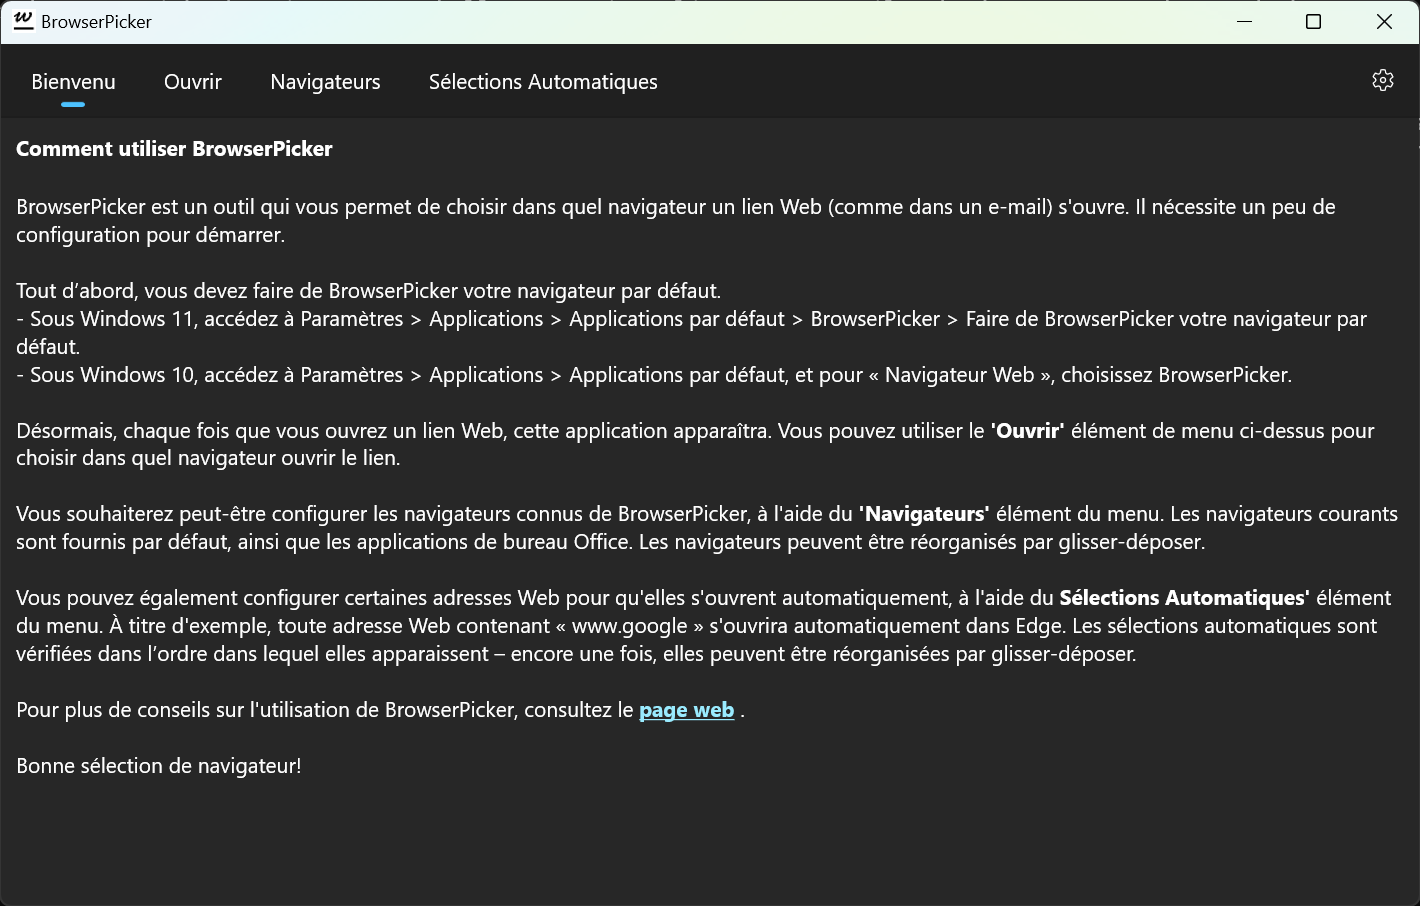 BrowserPicker - Page de bienvenue, avec des instructions d'utilisation de base (mode sombre).